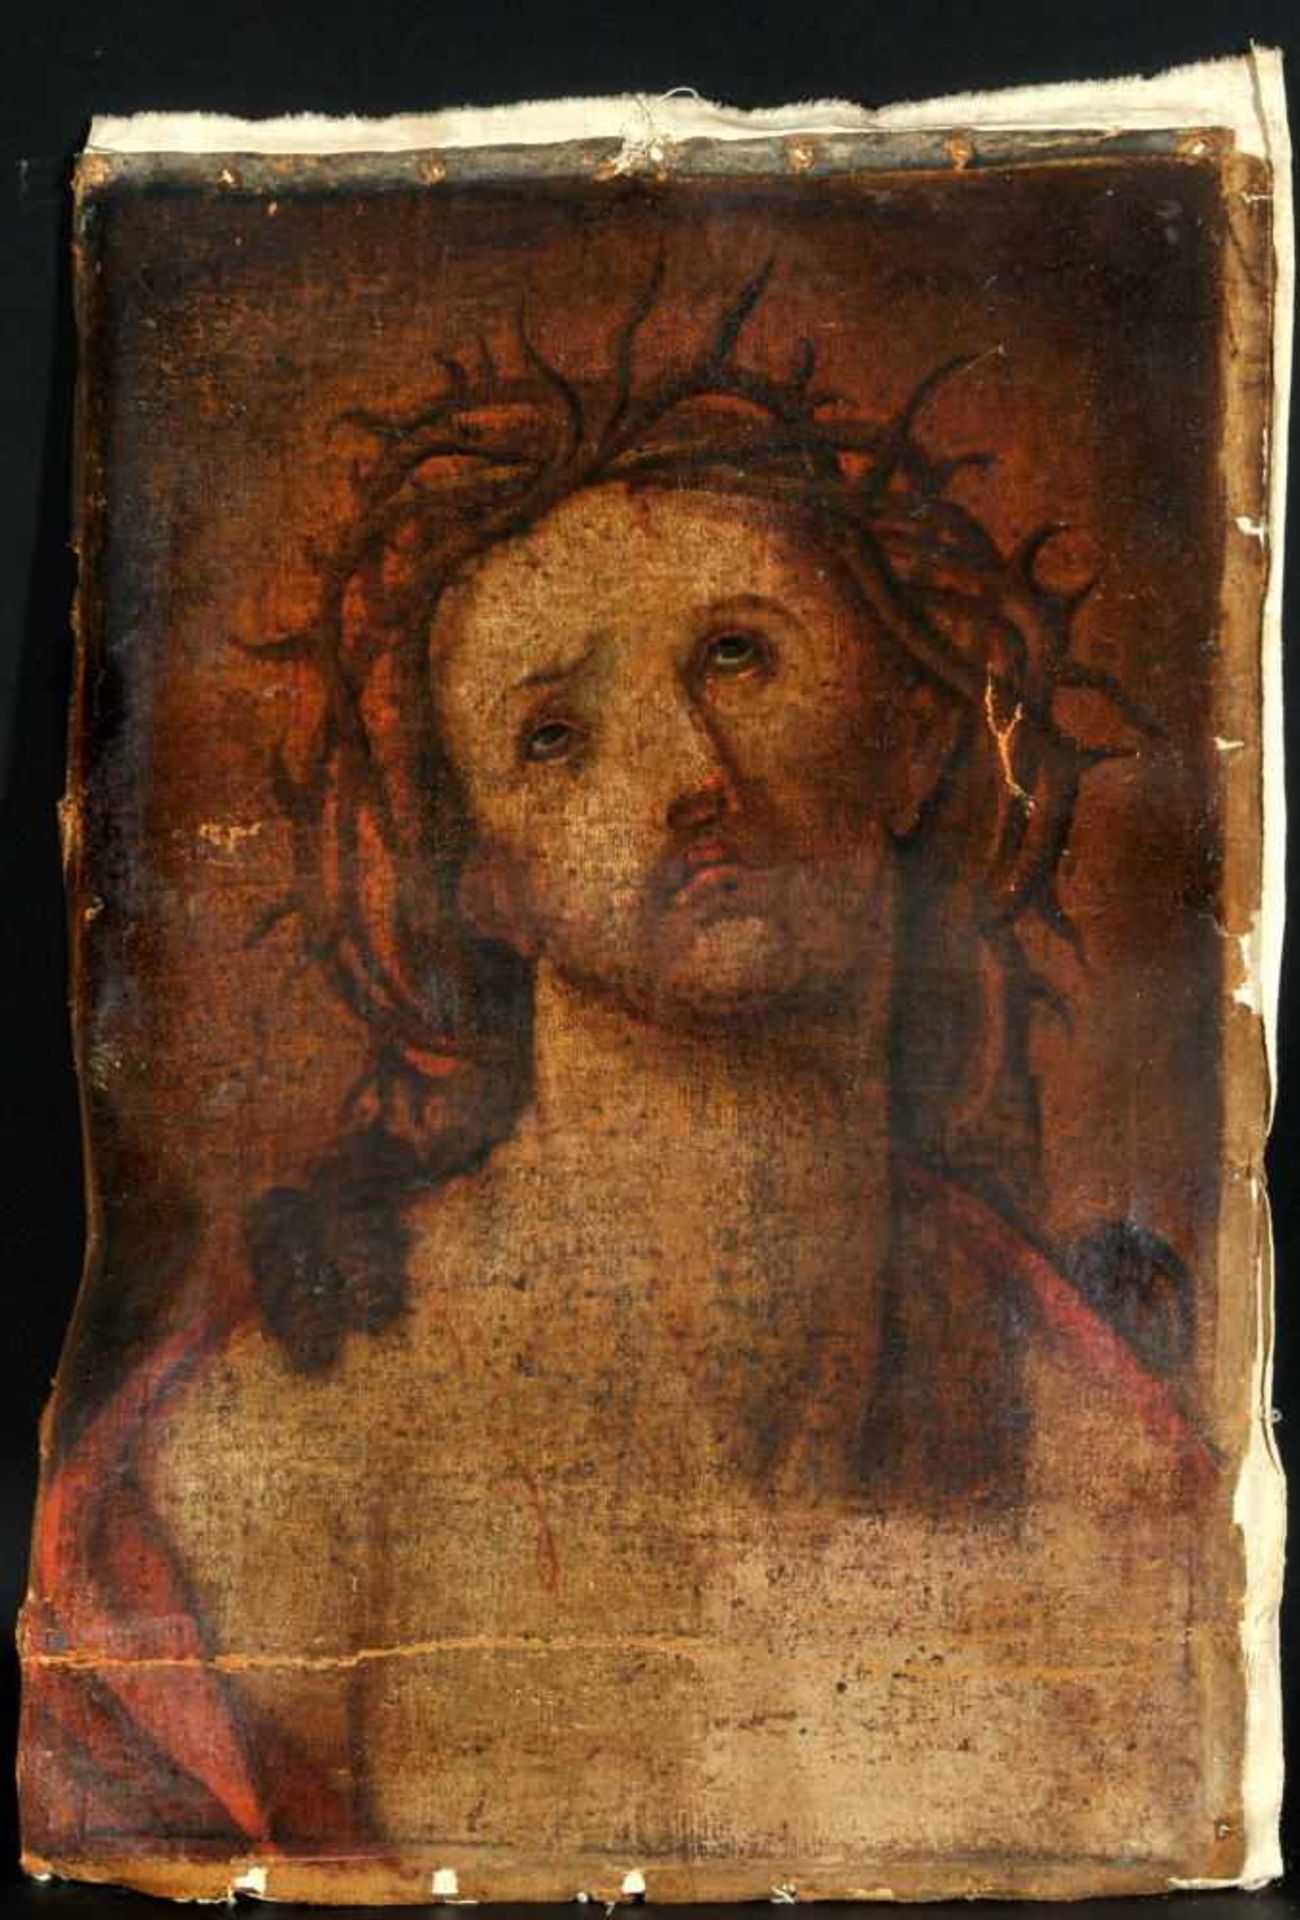 Bildnismaler des 18./19. Jh.Öl/Lwd, doubl., 61 x 43 cm, " Christuskopf mit Dornenkrone ", ohne